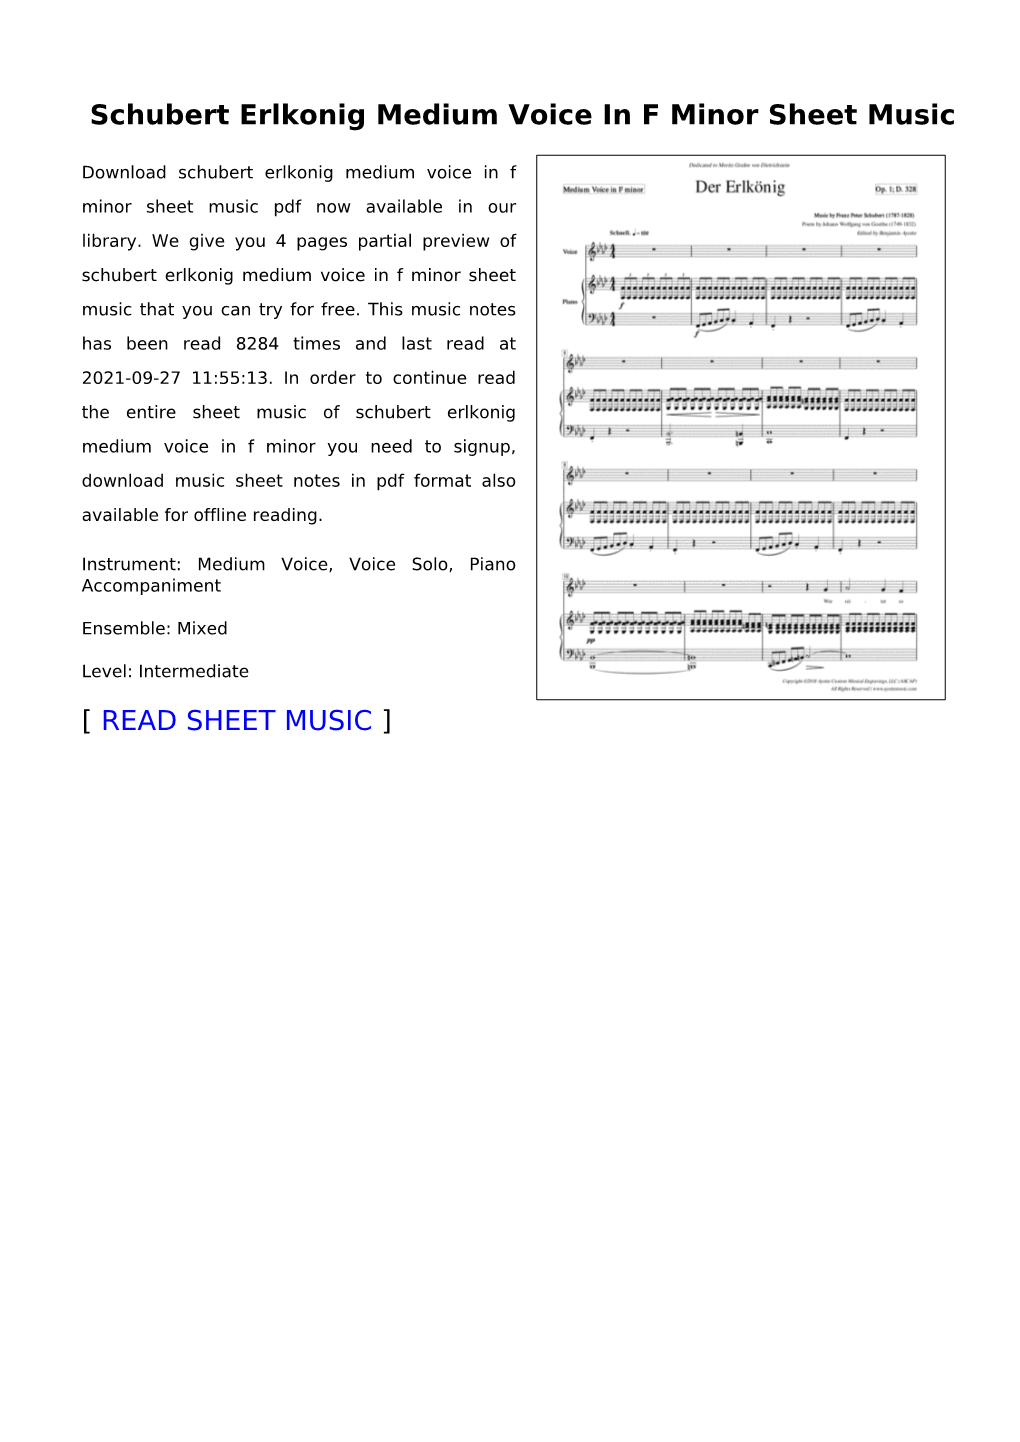 Schubert Erlkonig Medium Voice in F Minor Sheet Music